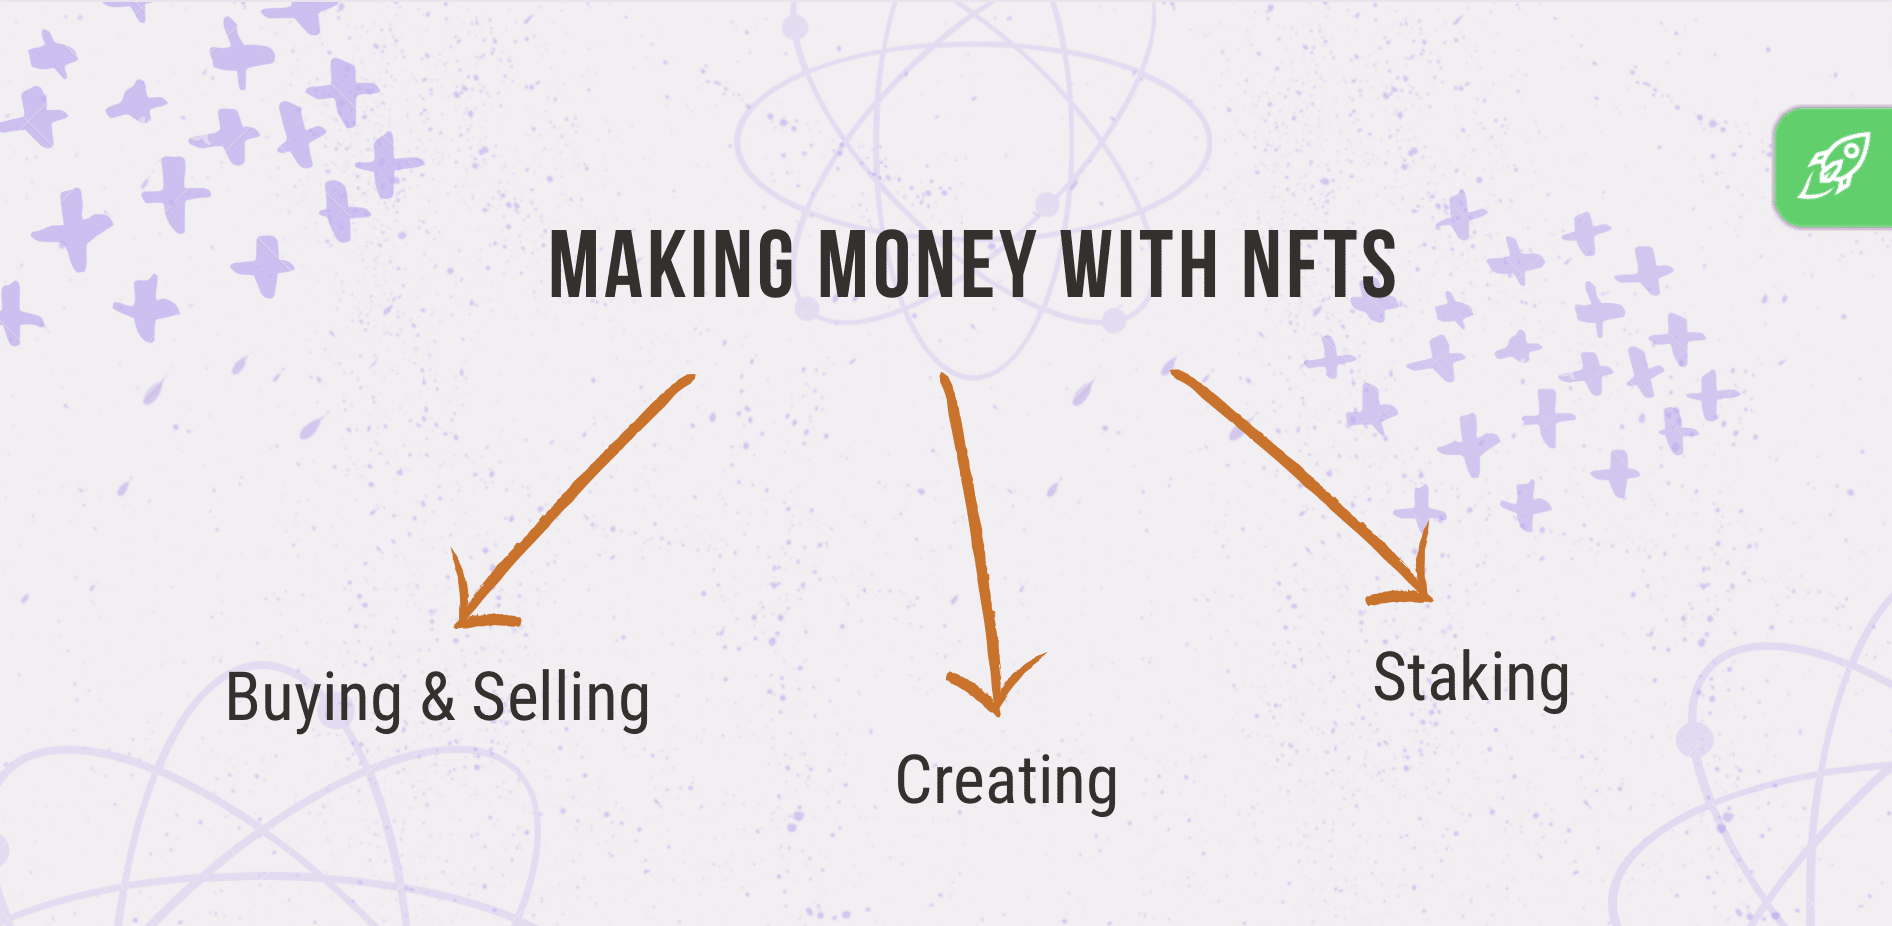 Cara menghasilkan uang dari NFT; tiga cara utama (trading, membuat, dan mempertaruhkan)